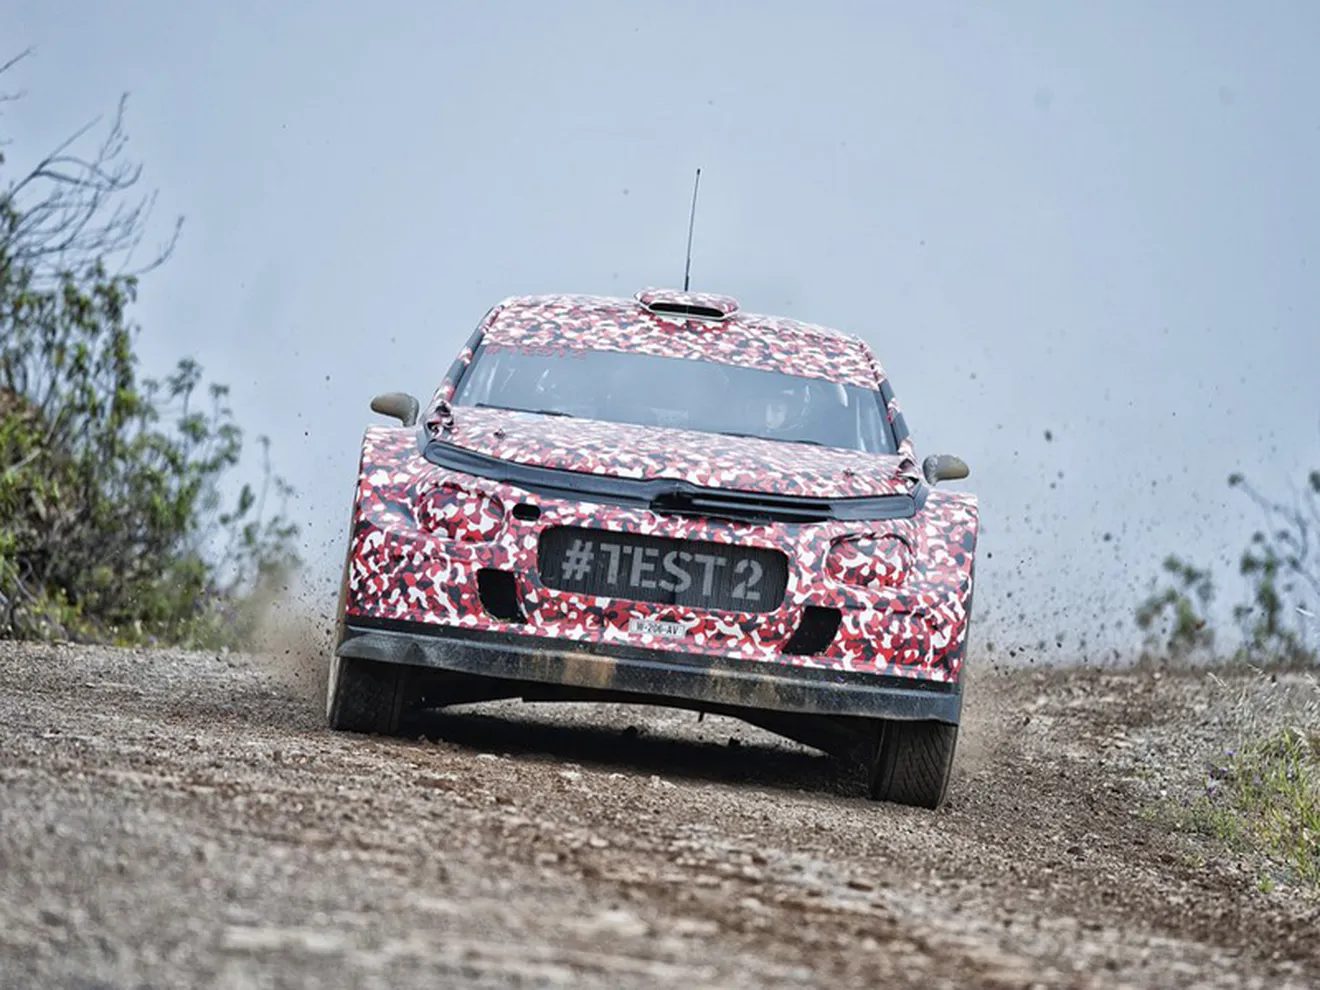 Positivo test del Citroën C3 WRC 2017 en Portugal